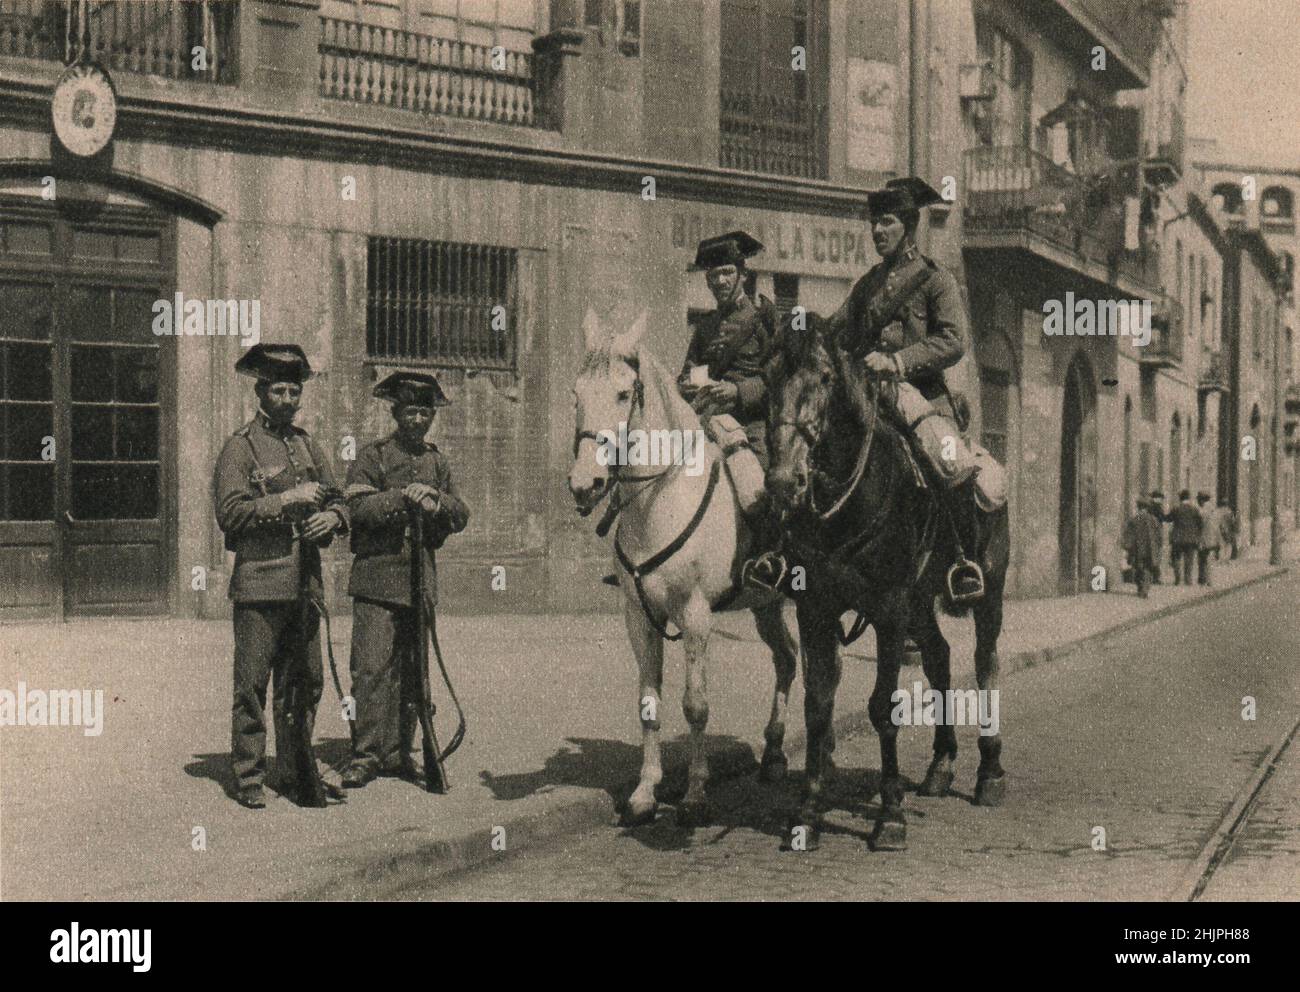 Inspirée de la gendarmerie formée en France en 1791, la Guardia civil, ou police d'État espagnole, est un corps semi-militaire. Barcelone (1923) Banque D'Images